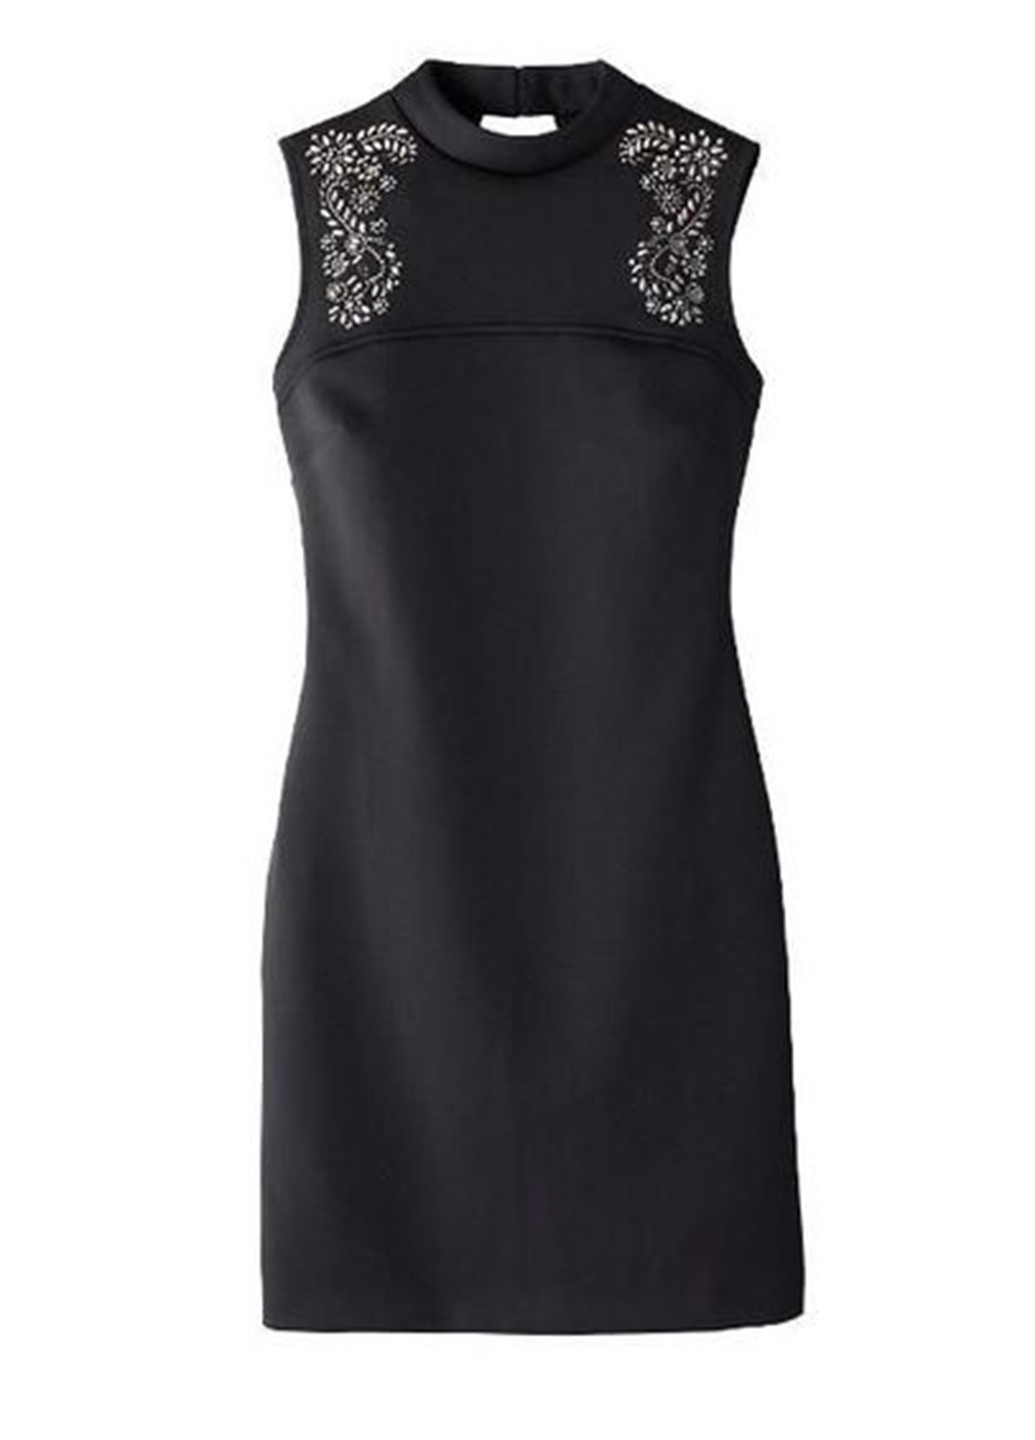 Черное коктейльное платье футляр Signature Collection однотонное